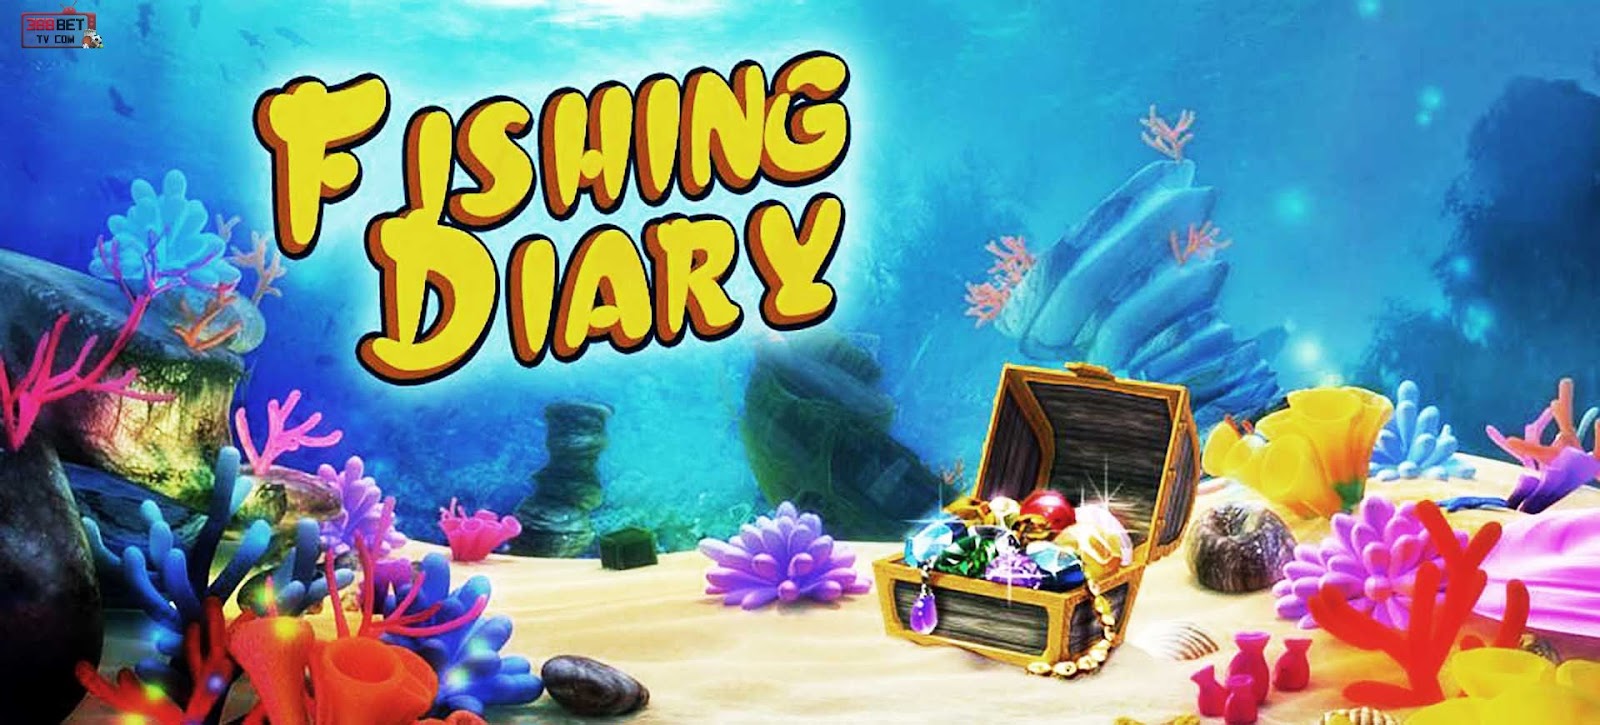 Game bắn cá Fishing Diary